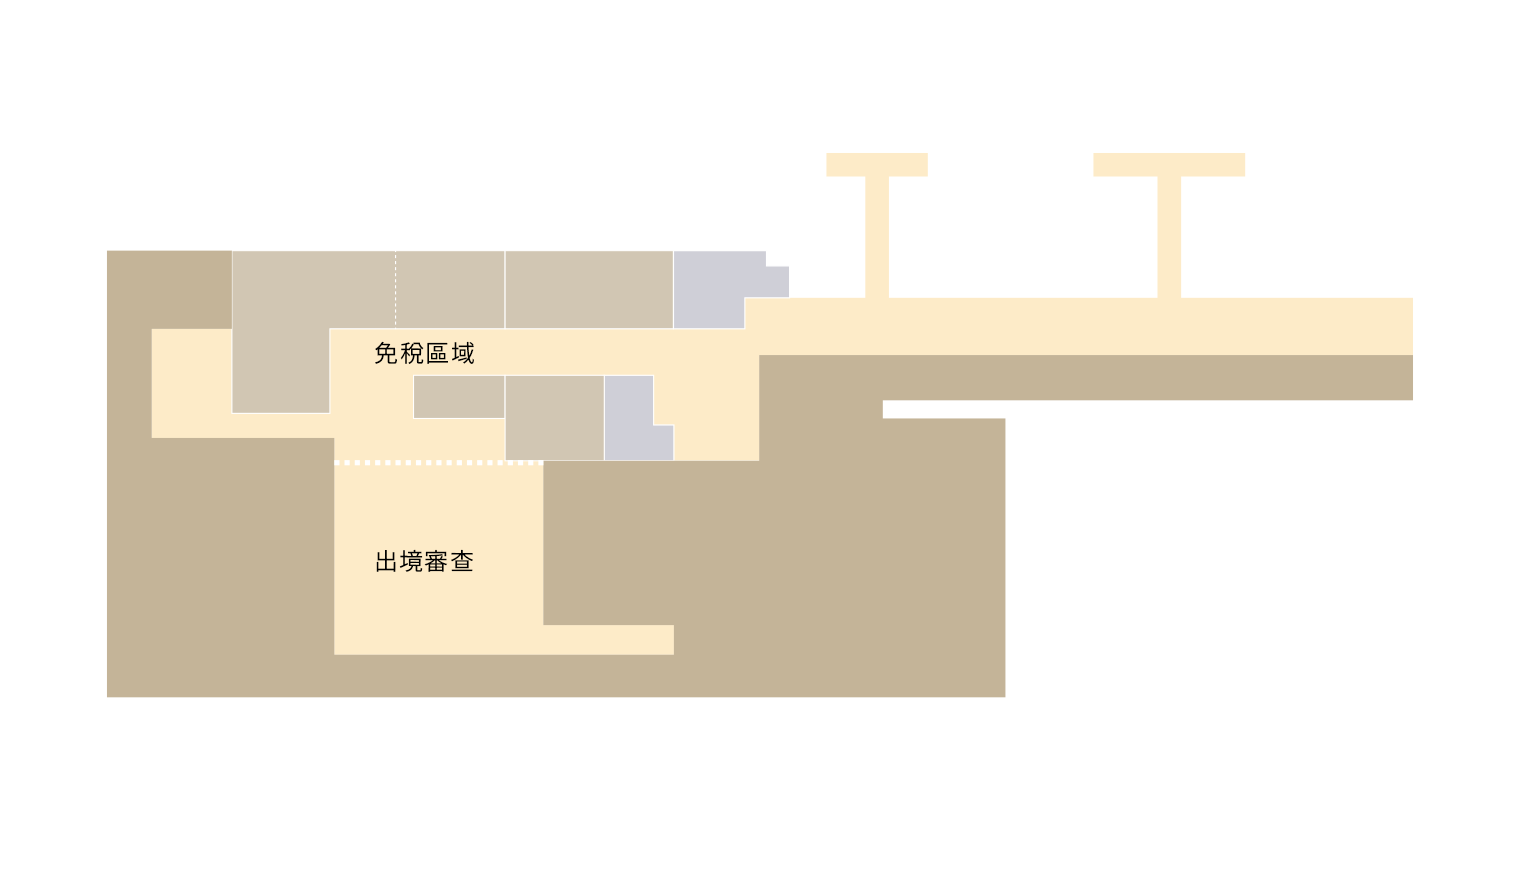 樓層地圖